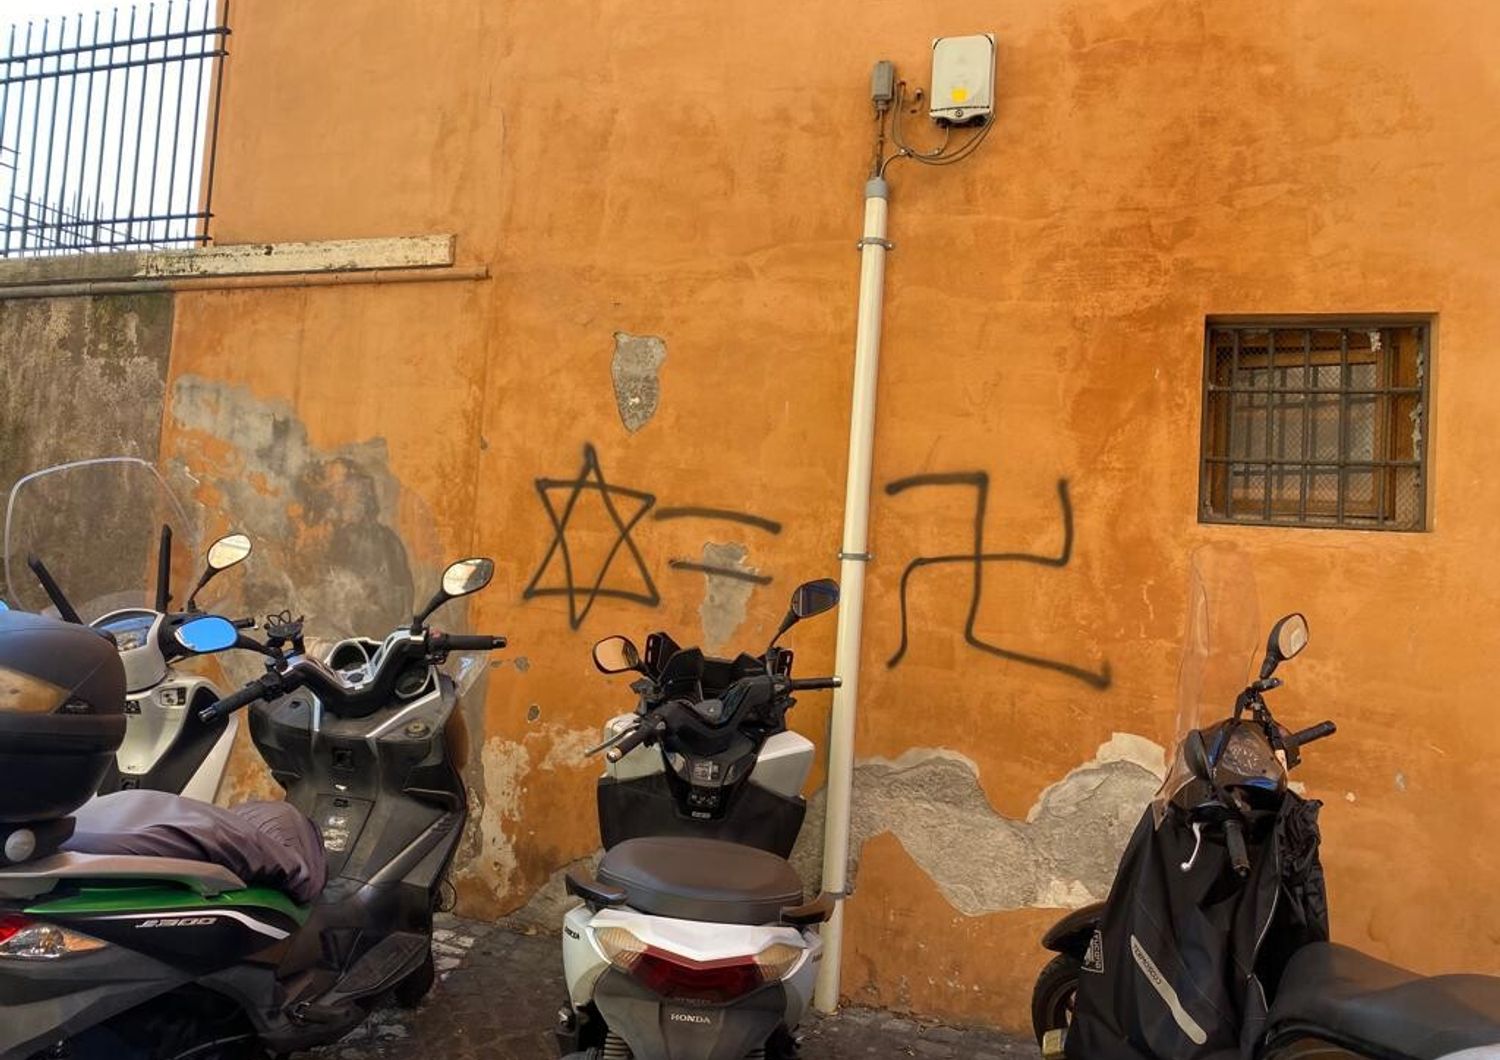 Scritte antisemite apparse al Ghetto di Roma